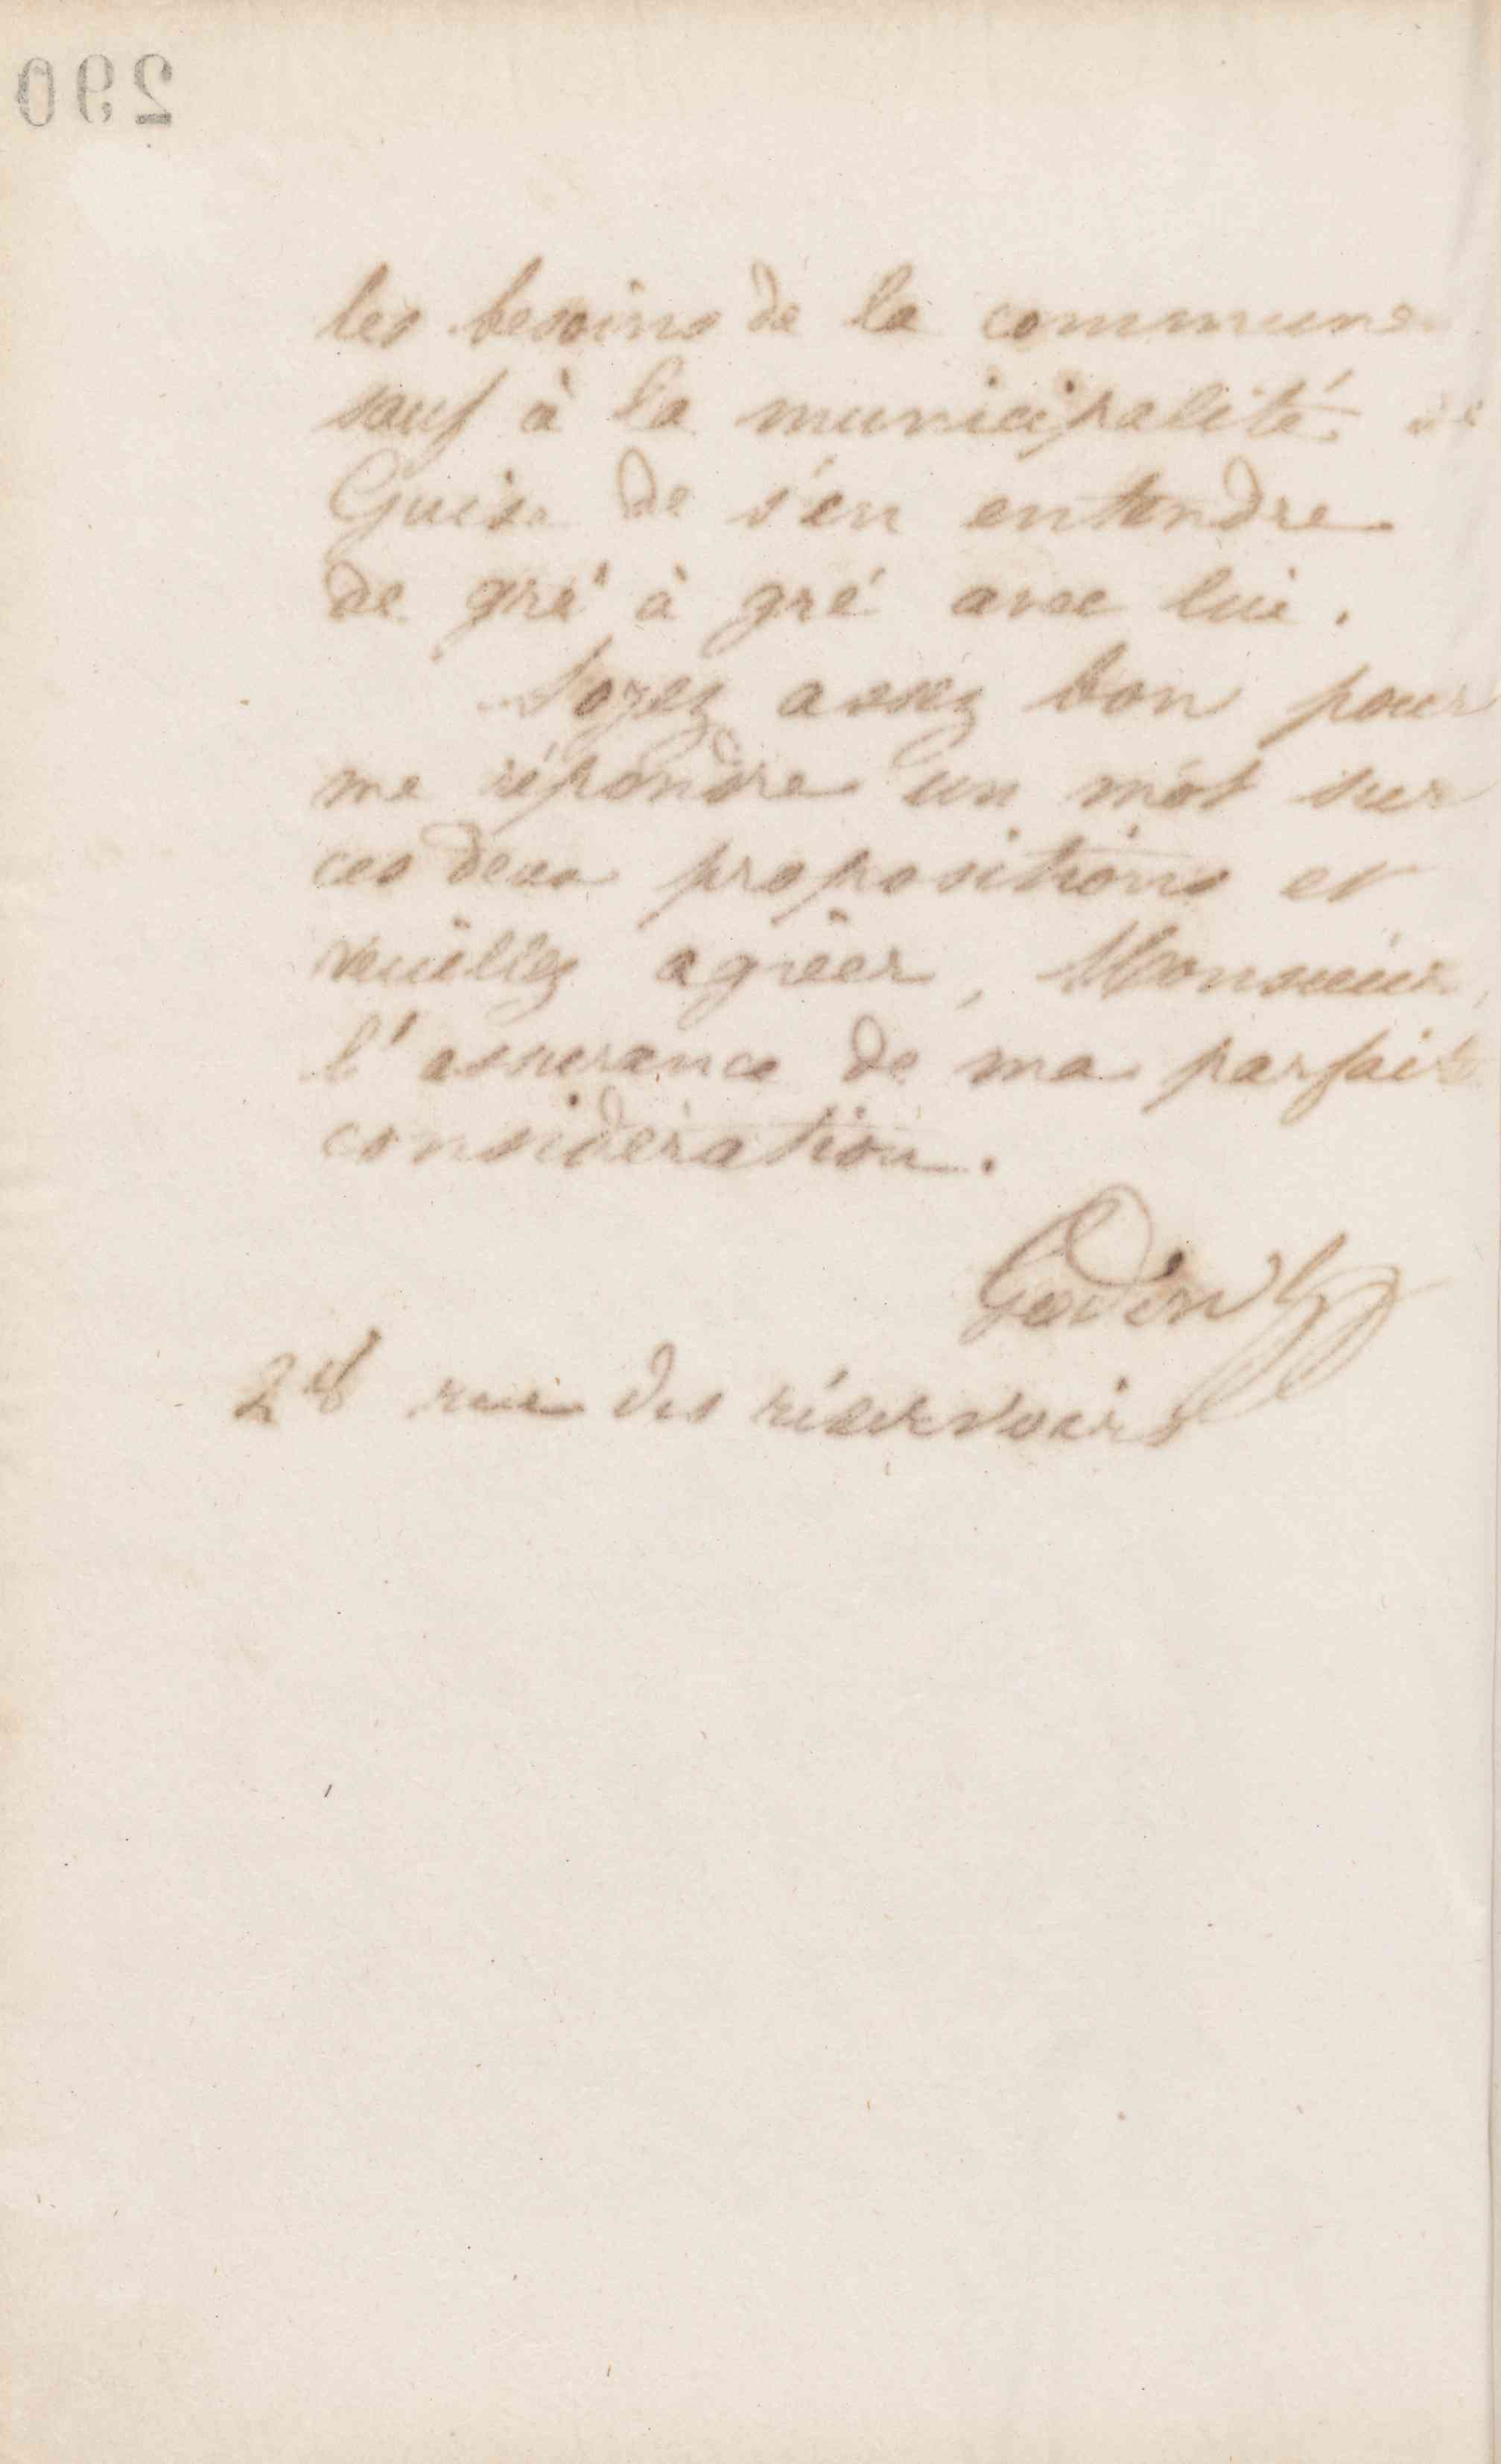 Jean-Baptiste André Godin à monsieur Bruyant, 20 novembre 1872